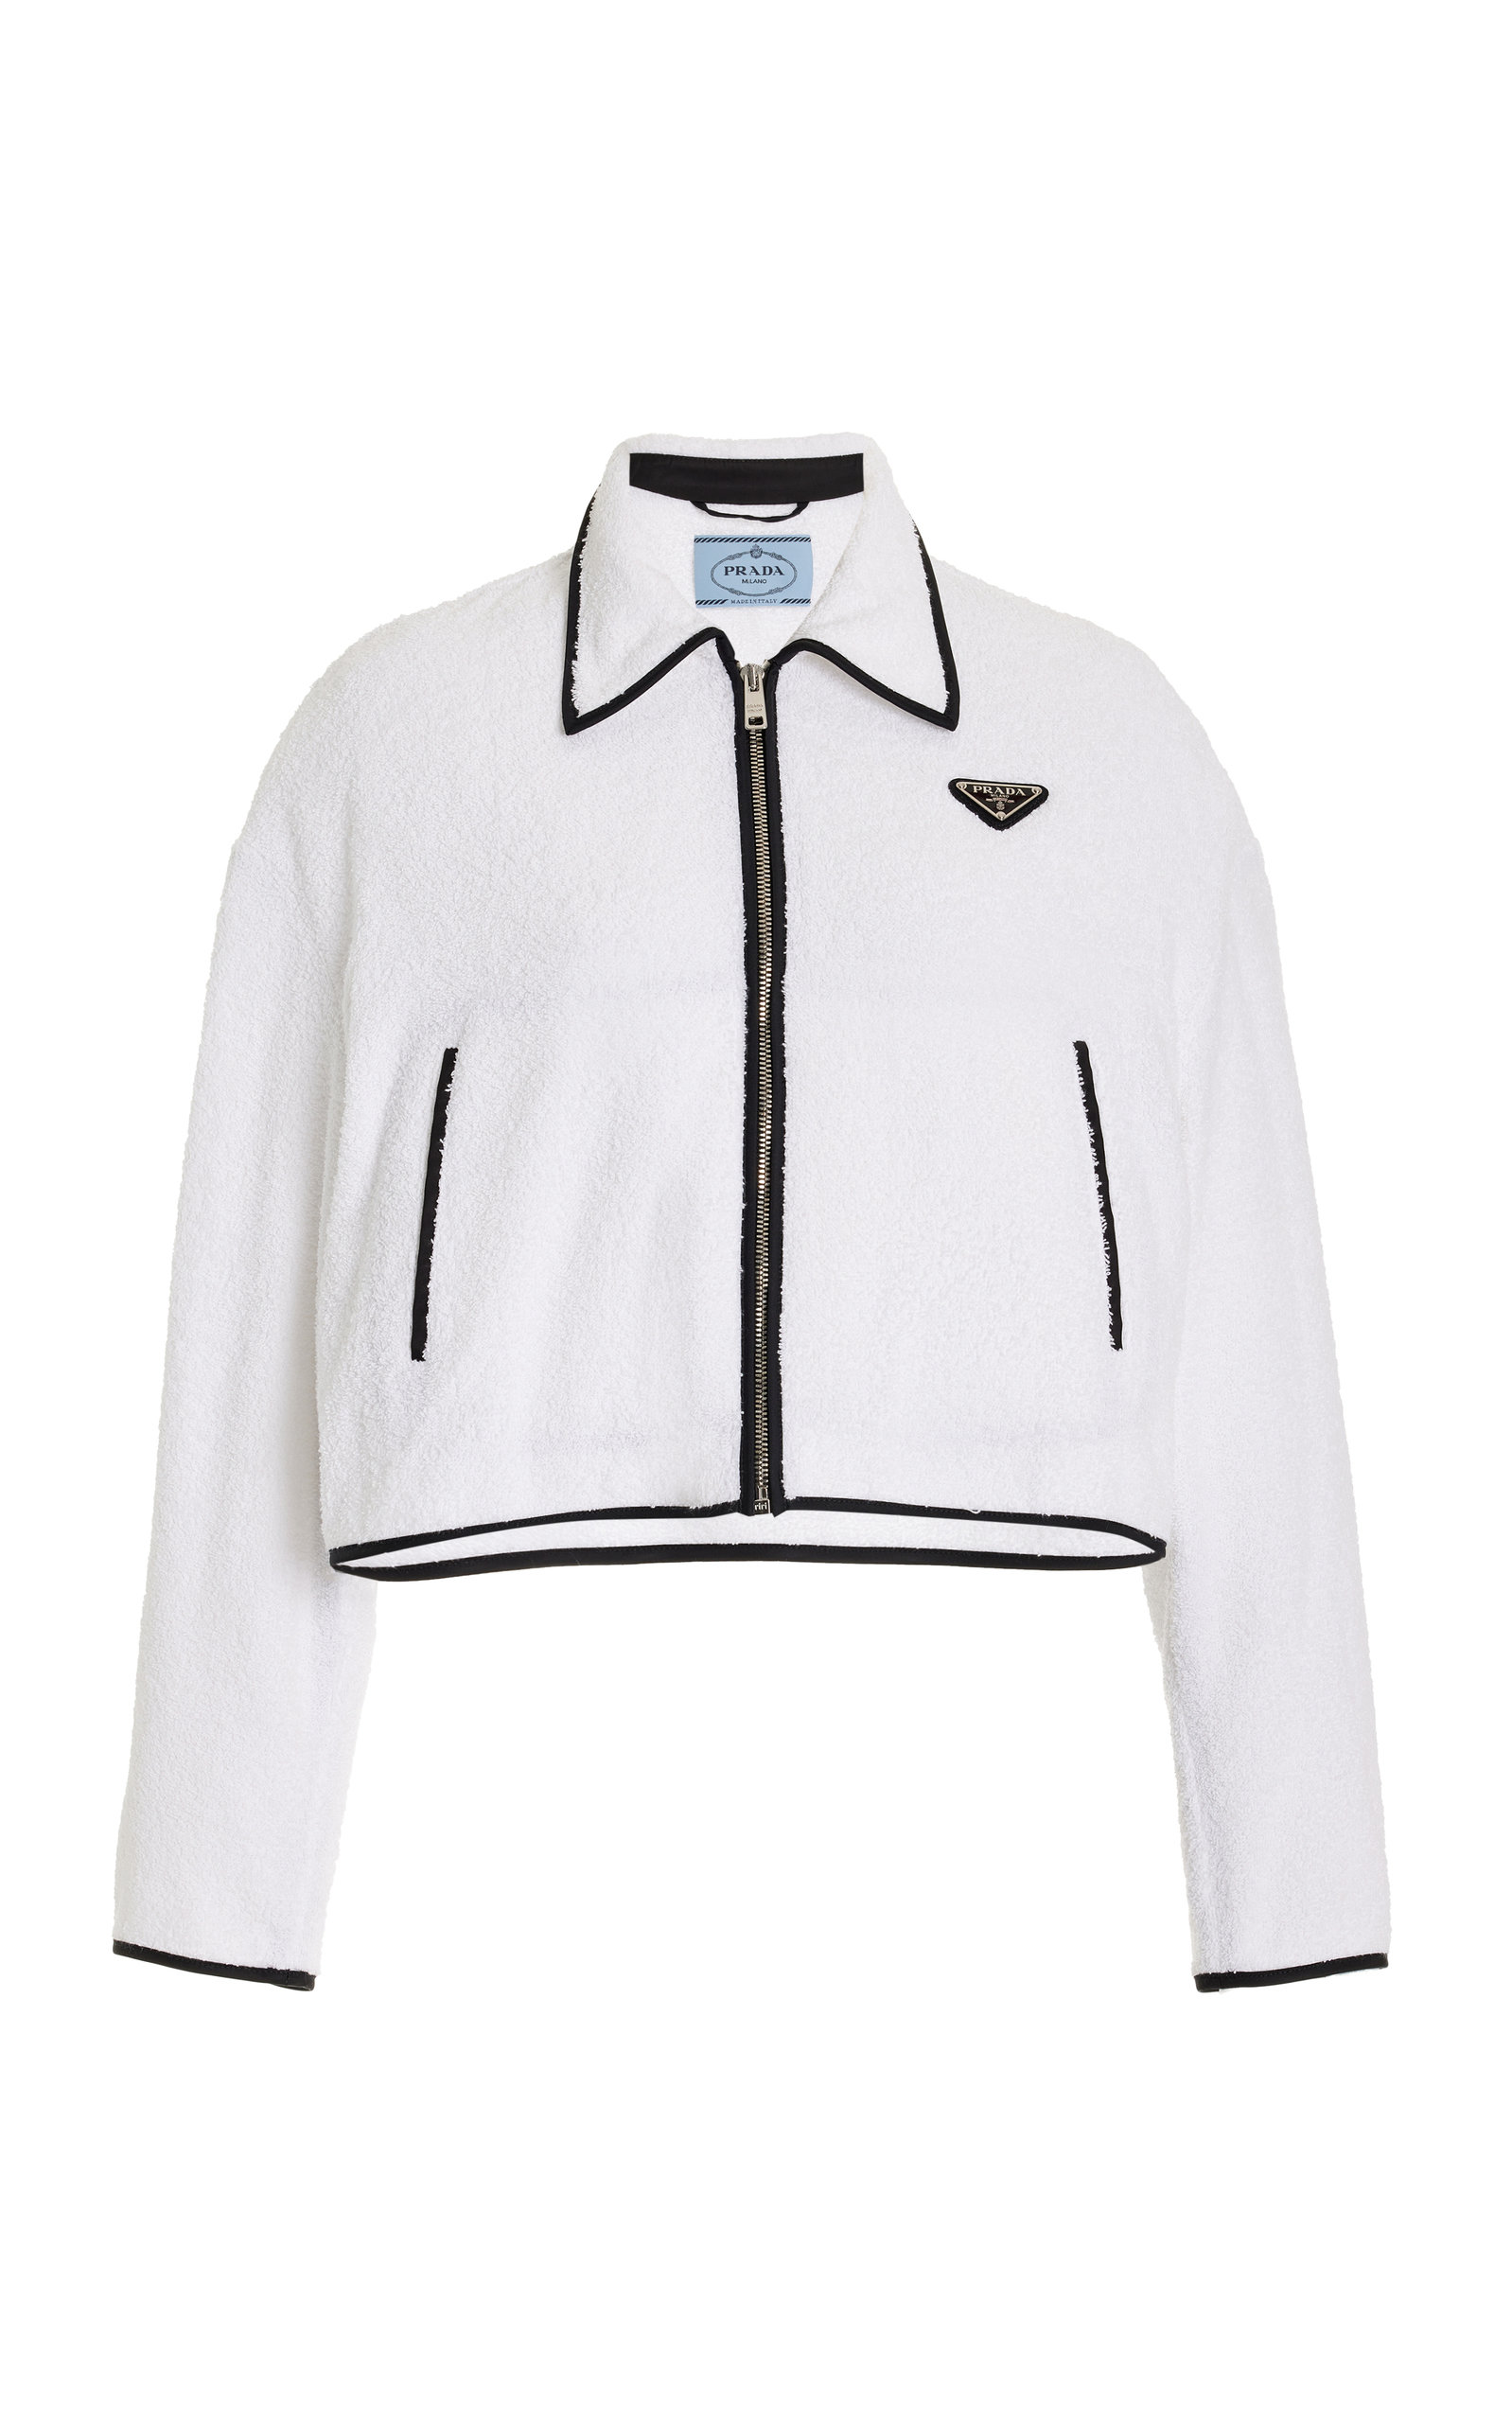 Prada Women's Cotton Terrycloth Jacket